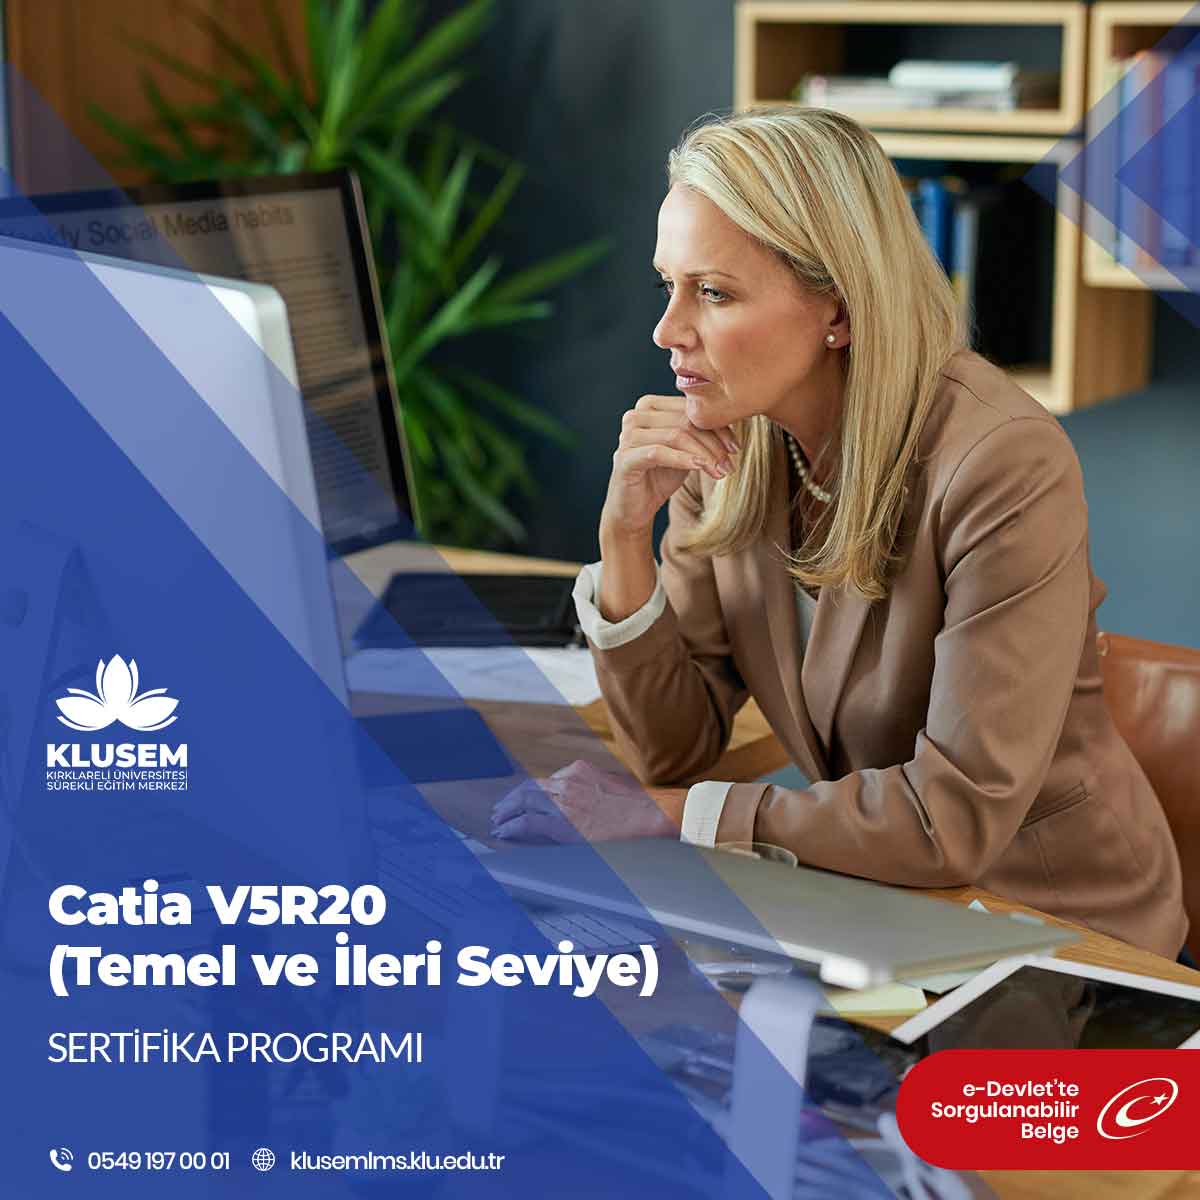 Catia V5R20 Temel ve ileri seviye Eğitimi Sertifika Programı